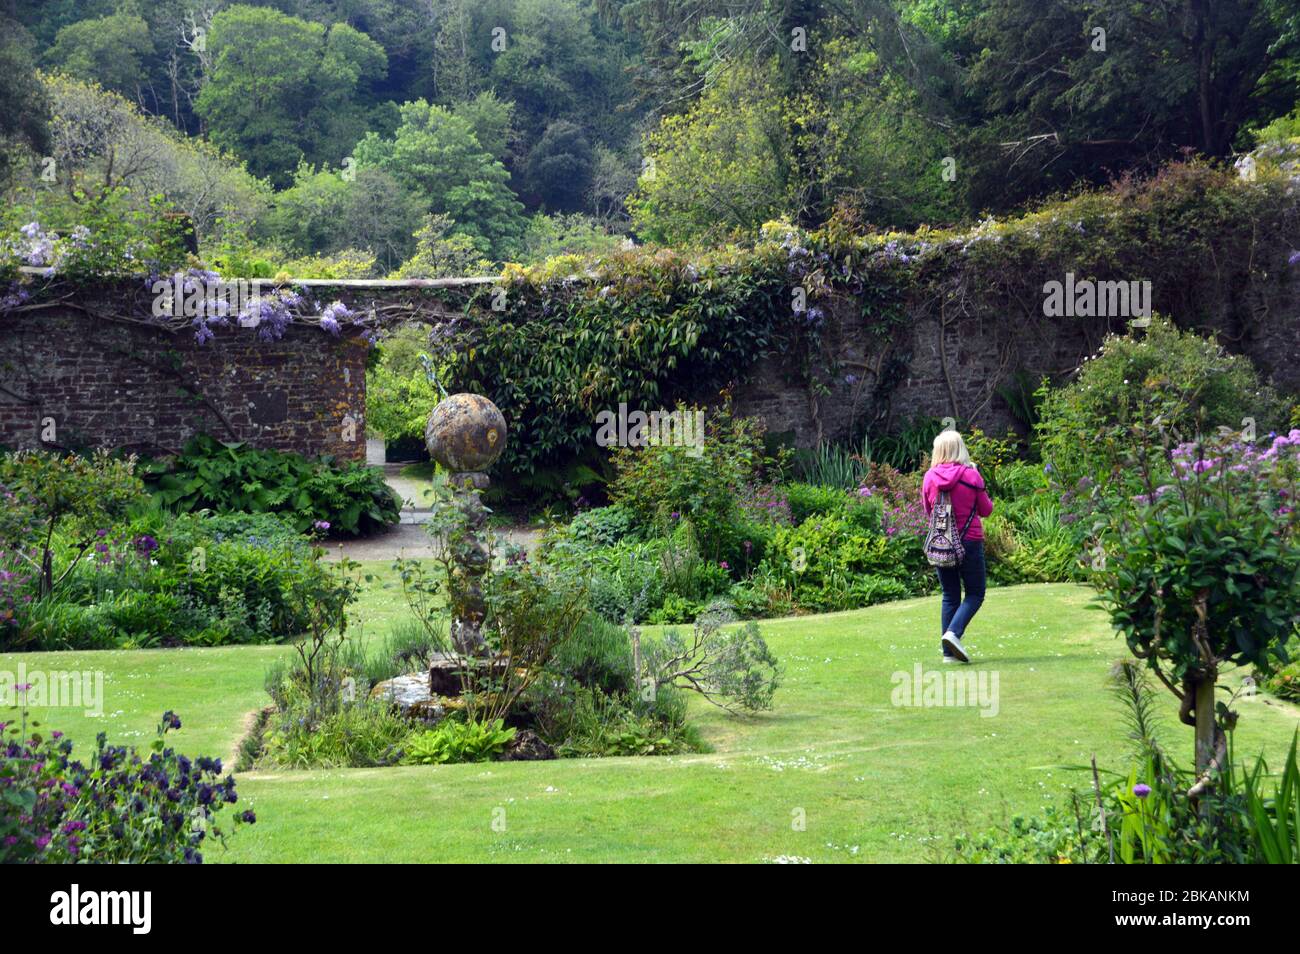 Femme marchant par une pierre Sculpture d'un cadran solaire dans le jardin clos à l'abbaye de Hartland Estate and Gardens, North Devon. Angleterre, Royaume-Uni. Banque D'Images